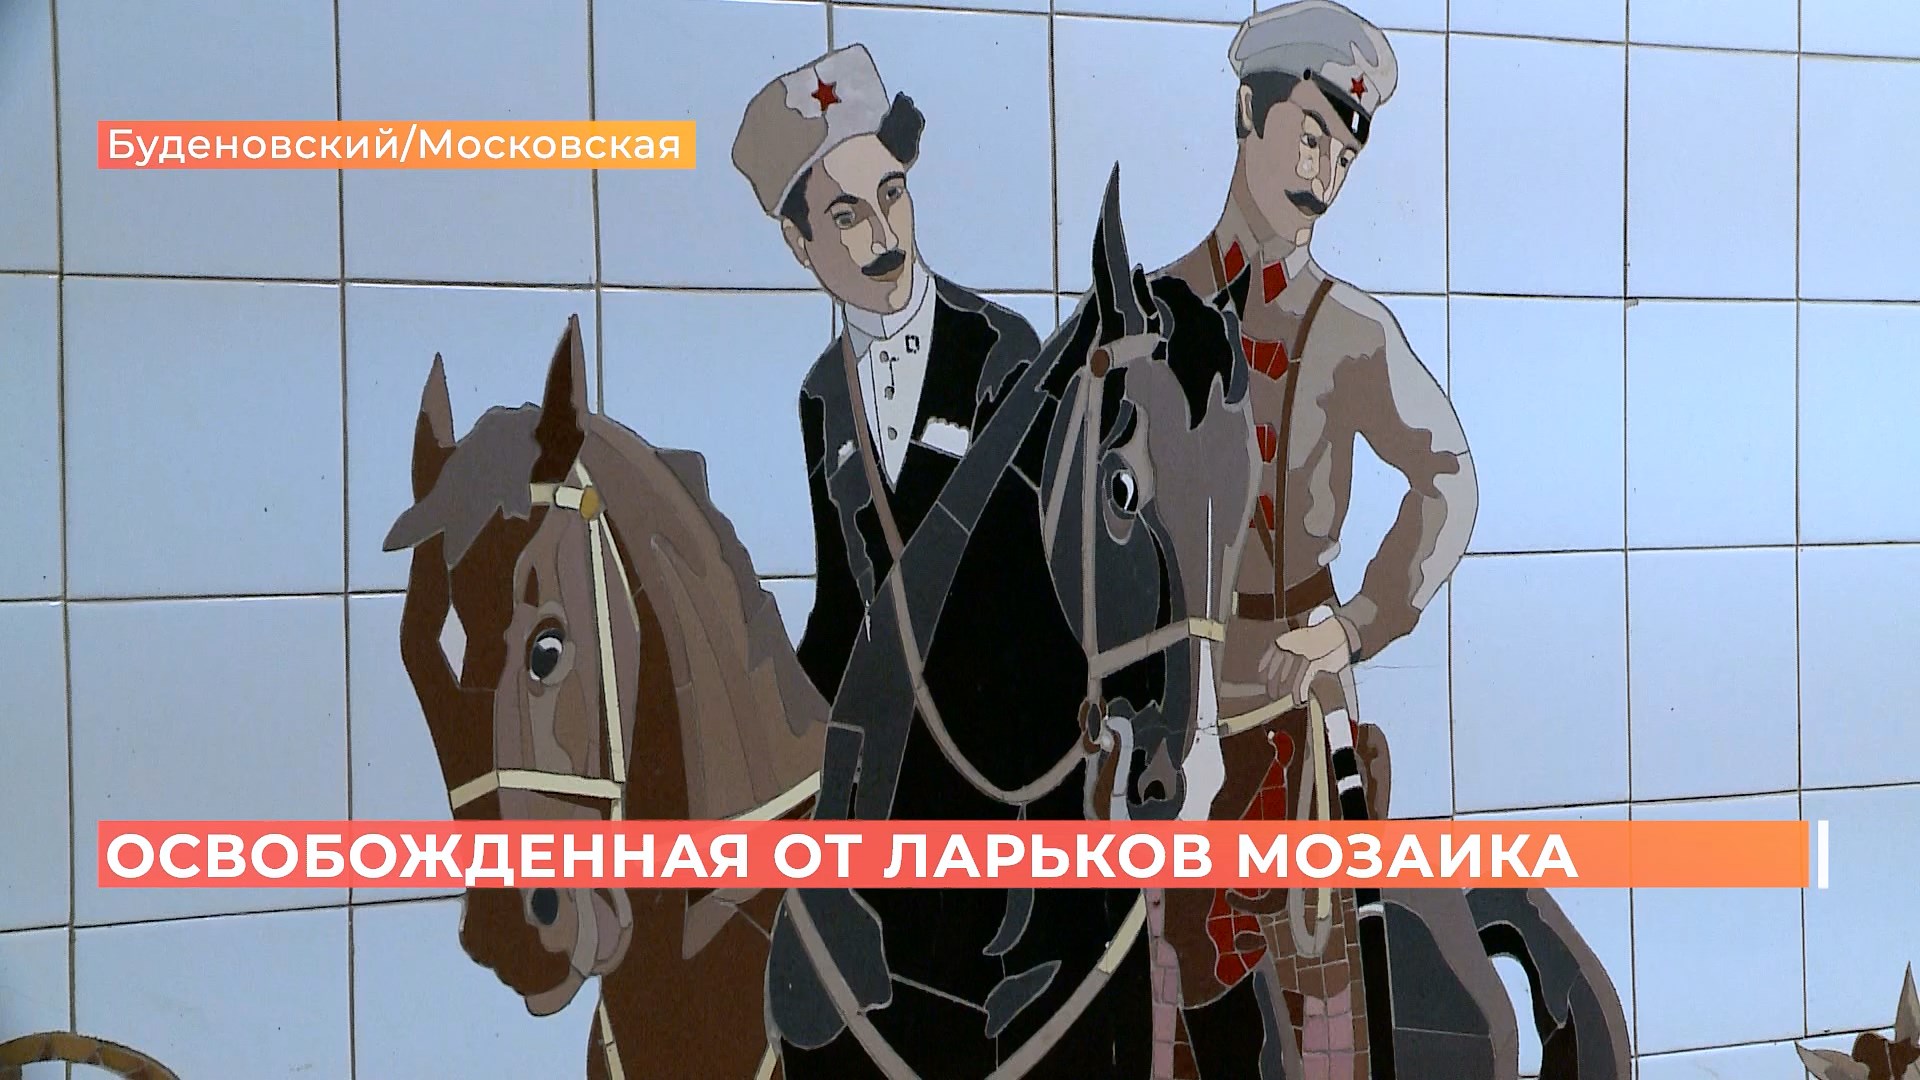 Было скрыто за ларьками: панно с казаками обнаружили в переходе на Буденновском\Московской